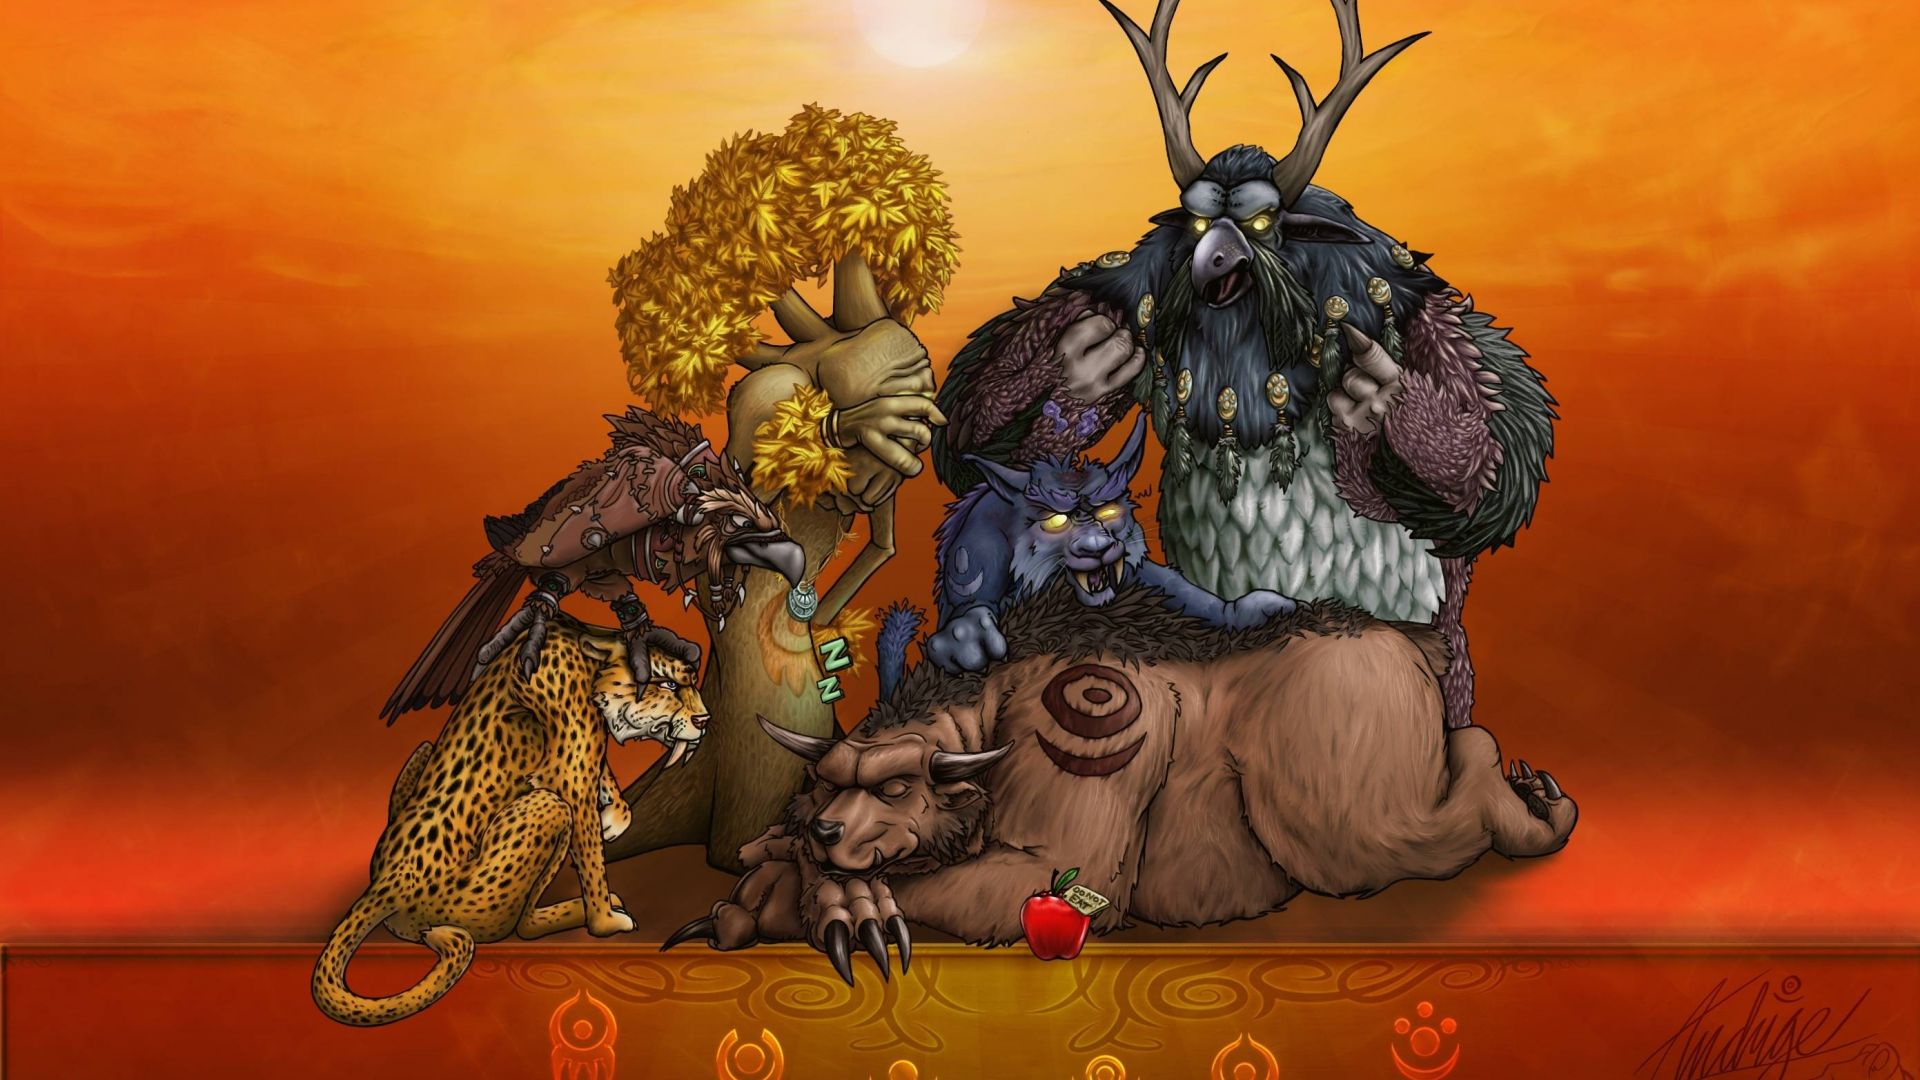 Wallpaper World of warcraft online game, animals